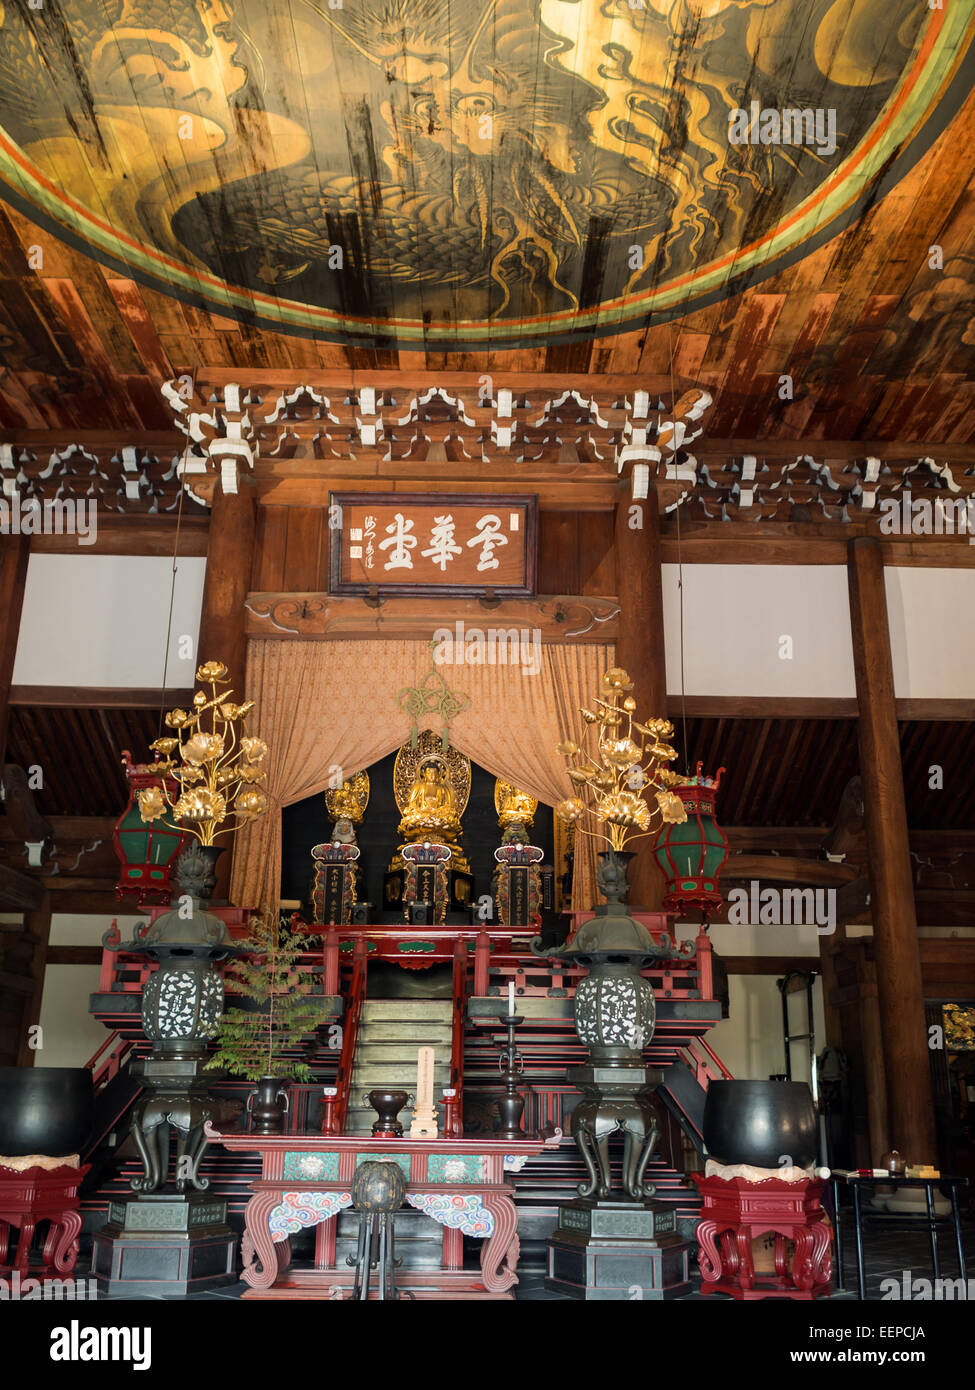 Honden, sala principale, vista interna con dipinto di golden dragon nel soffitto a Nanzen-ji Foto Stock